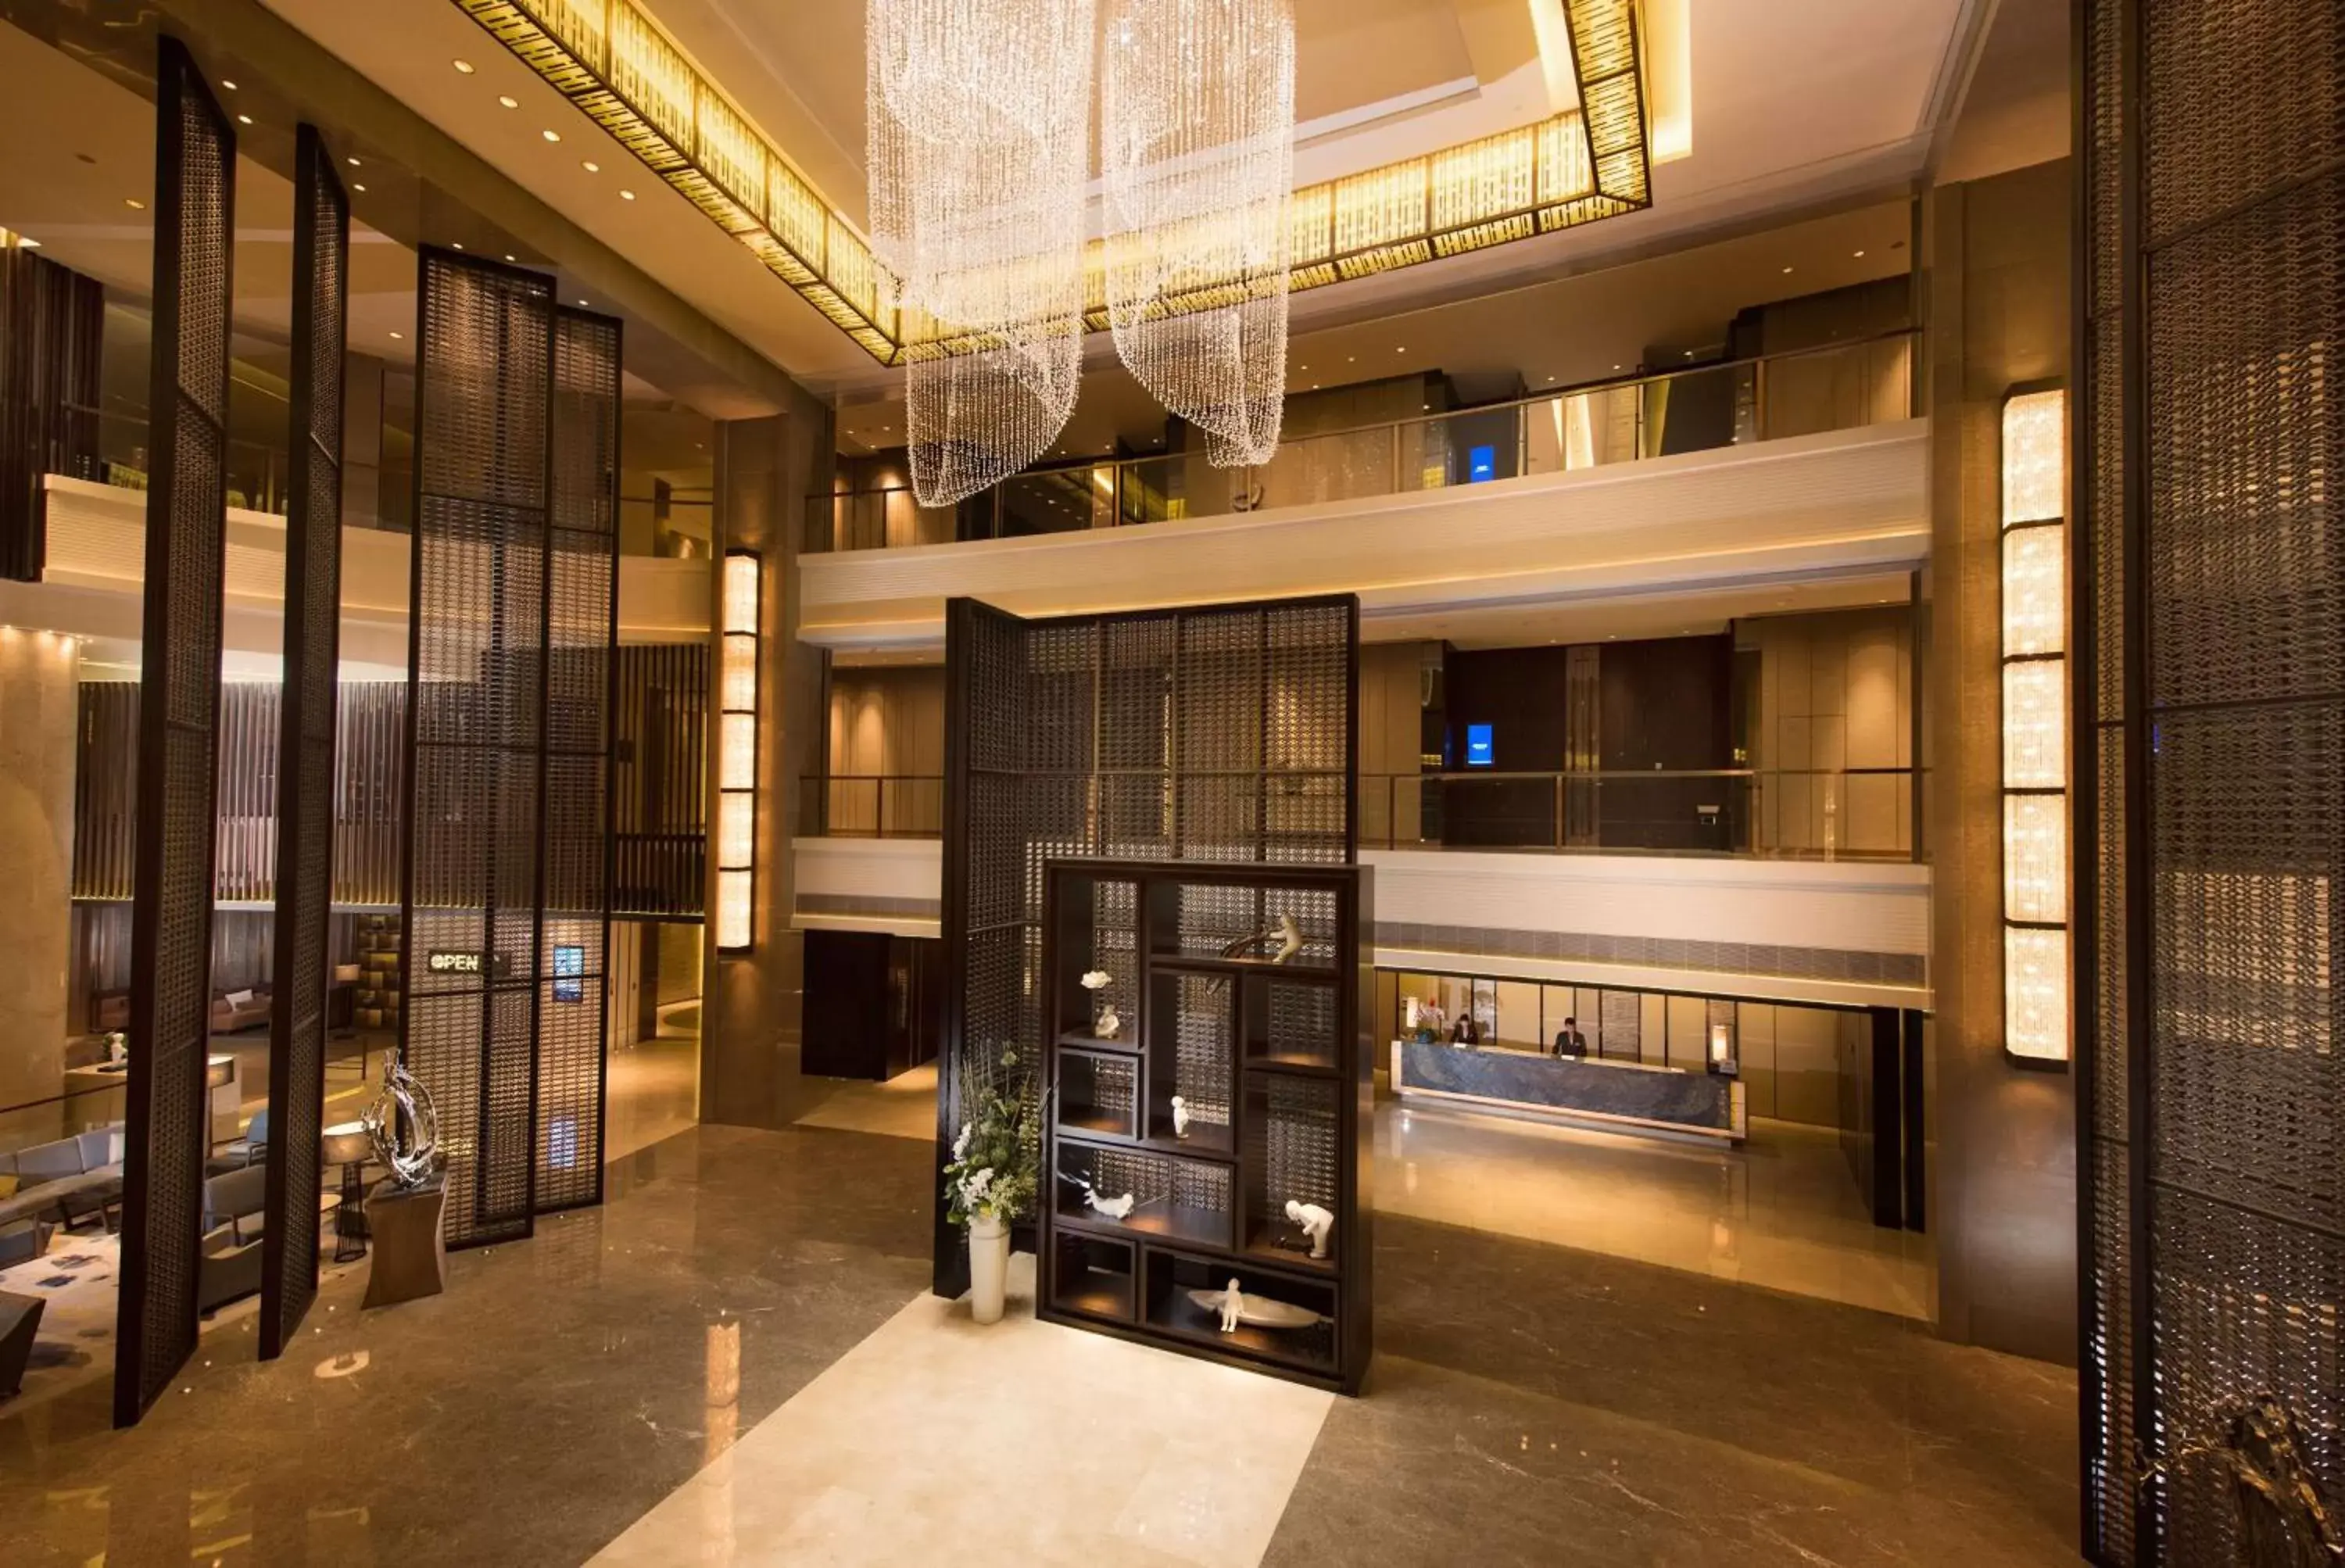 Lobby or reception in Hilton Zhoushan